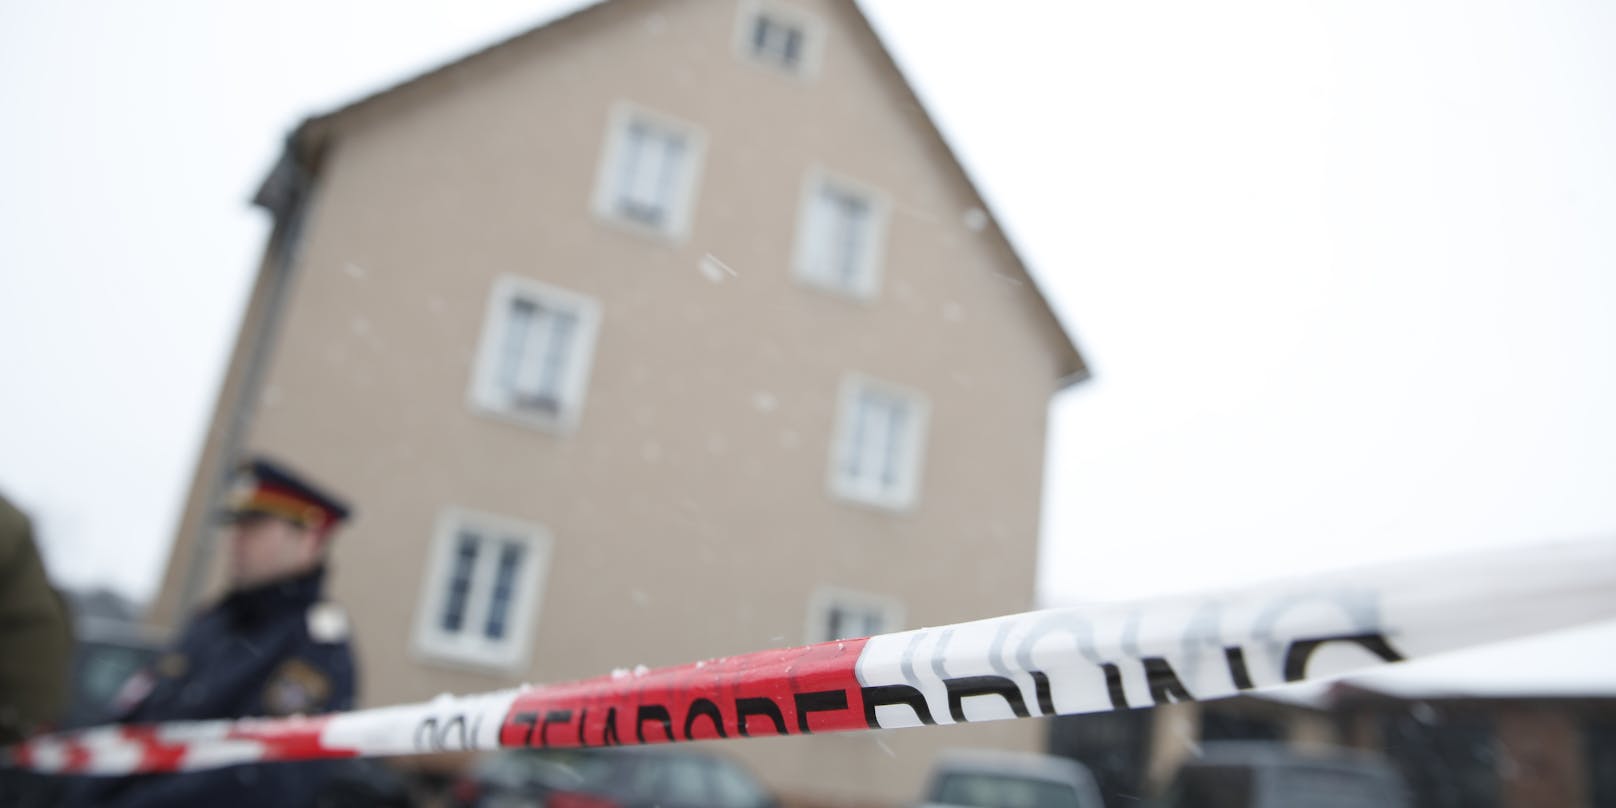 Die Bluttat ereignete sich am 4. Februar in einem Wohnhaus in Trieben.